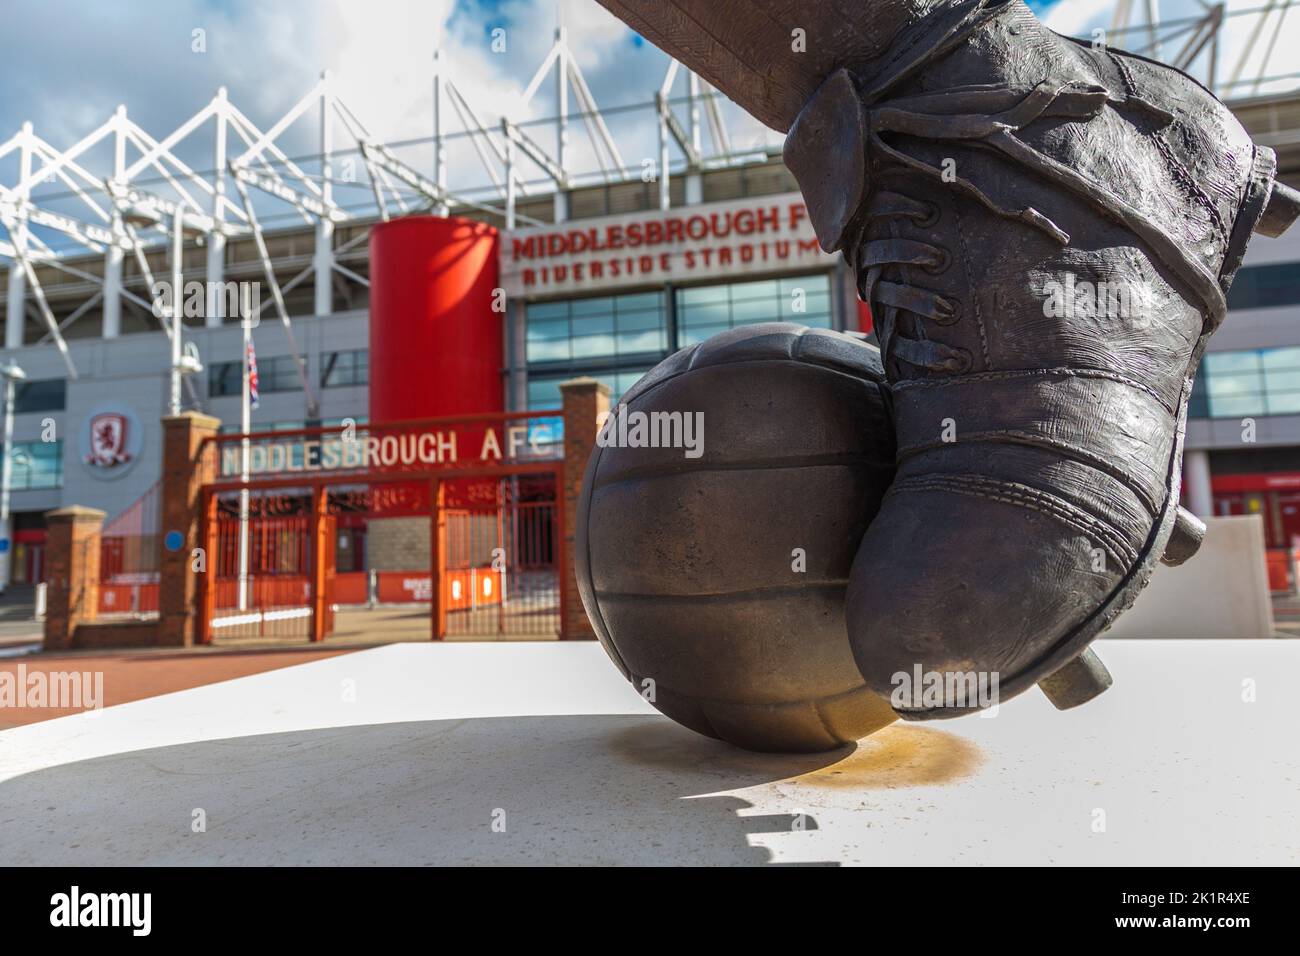 Middlesbrough Football Club's Riverside Stadium ,England,Reino Unido,Primer plano de fútbol y los jugadores arrancan en primer plano Foto de stock